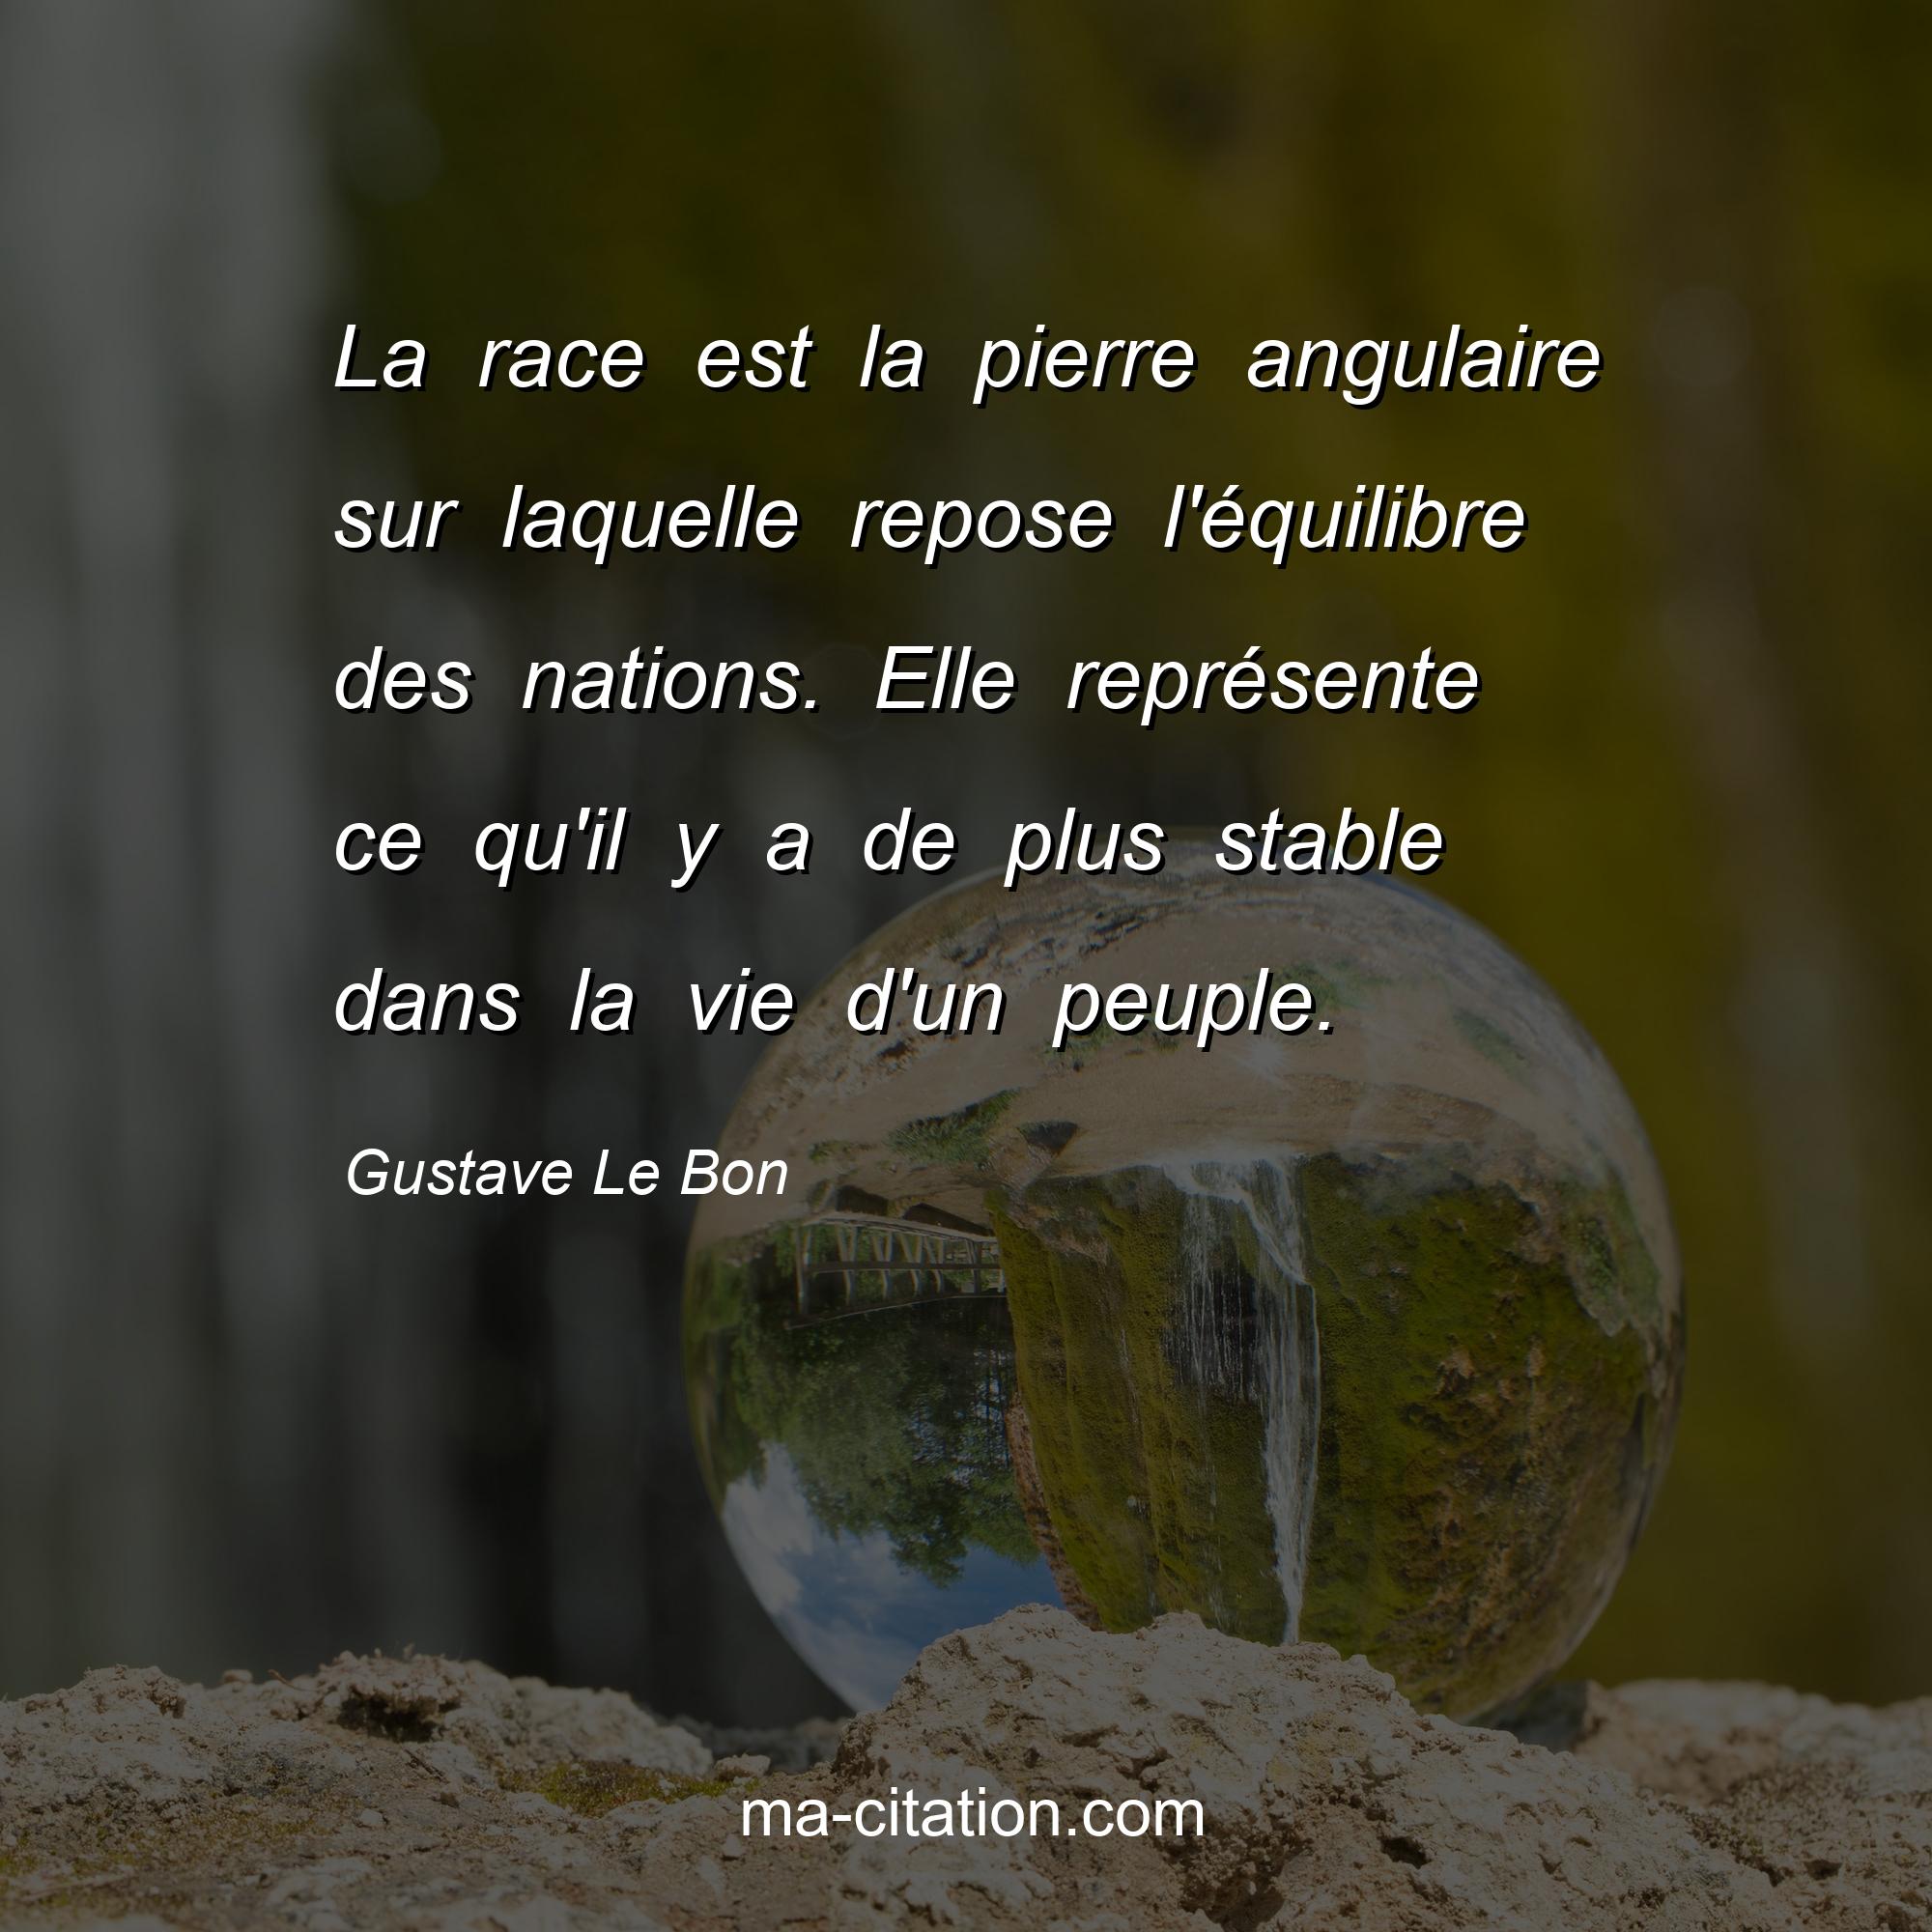 Gustave Le Bon : La race est la pierre angulaire sur laquelle repose l'équilibre des nations. Elle représente ce qu'il y a de plus stable dans la vie d'un peuple.